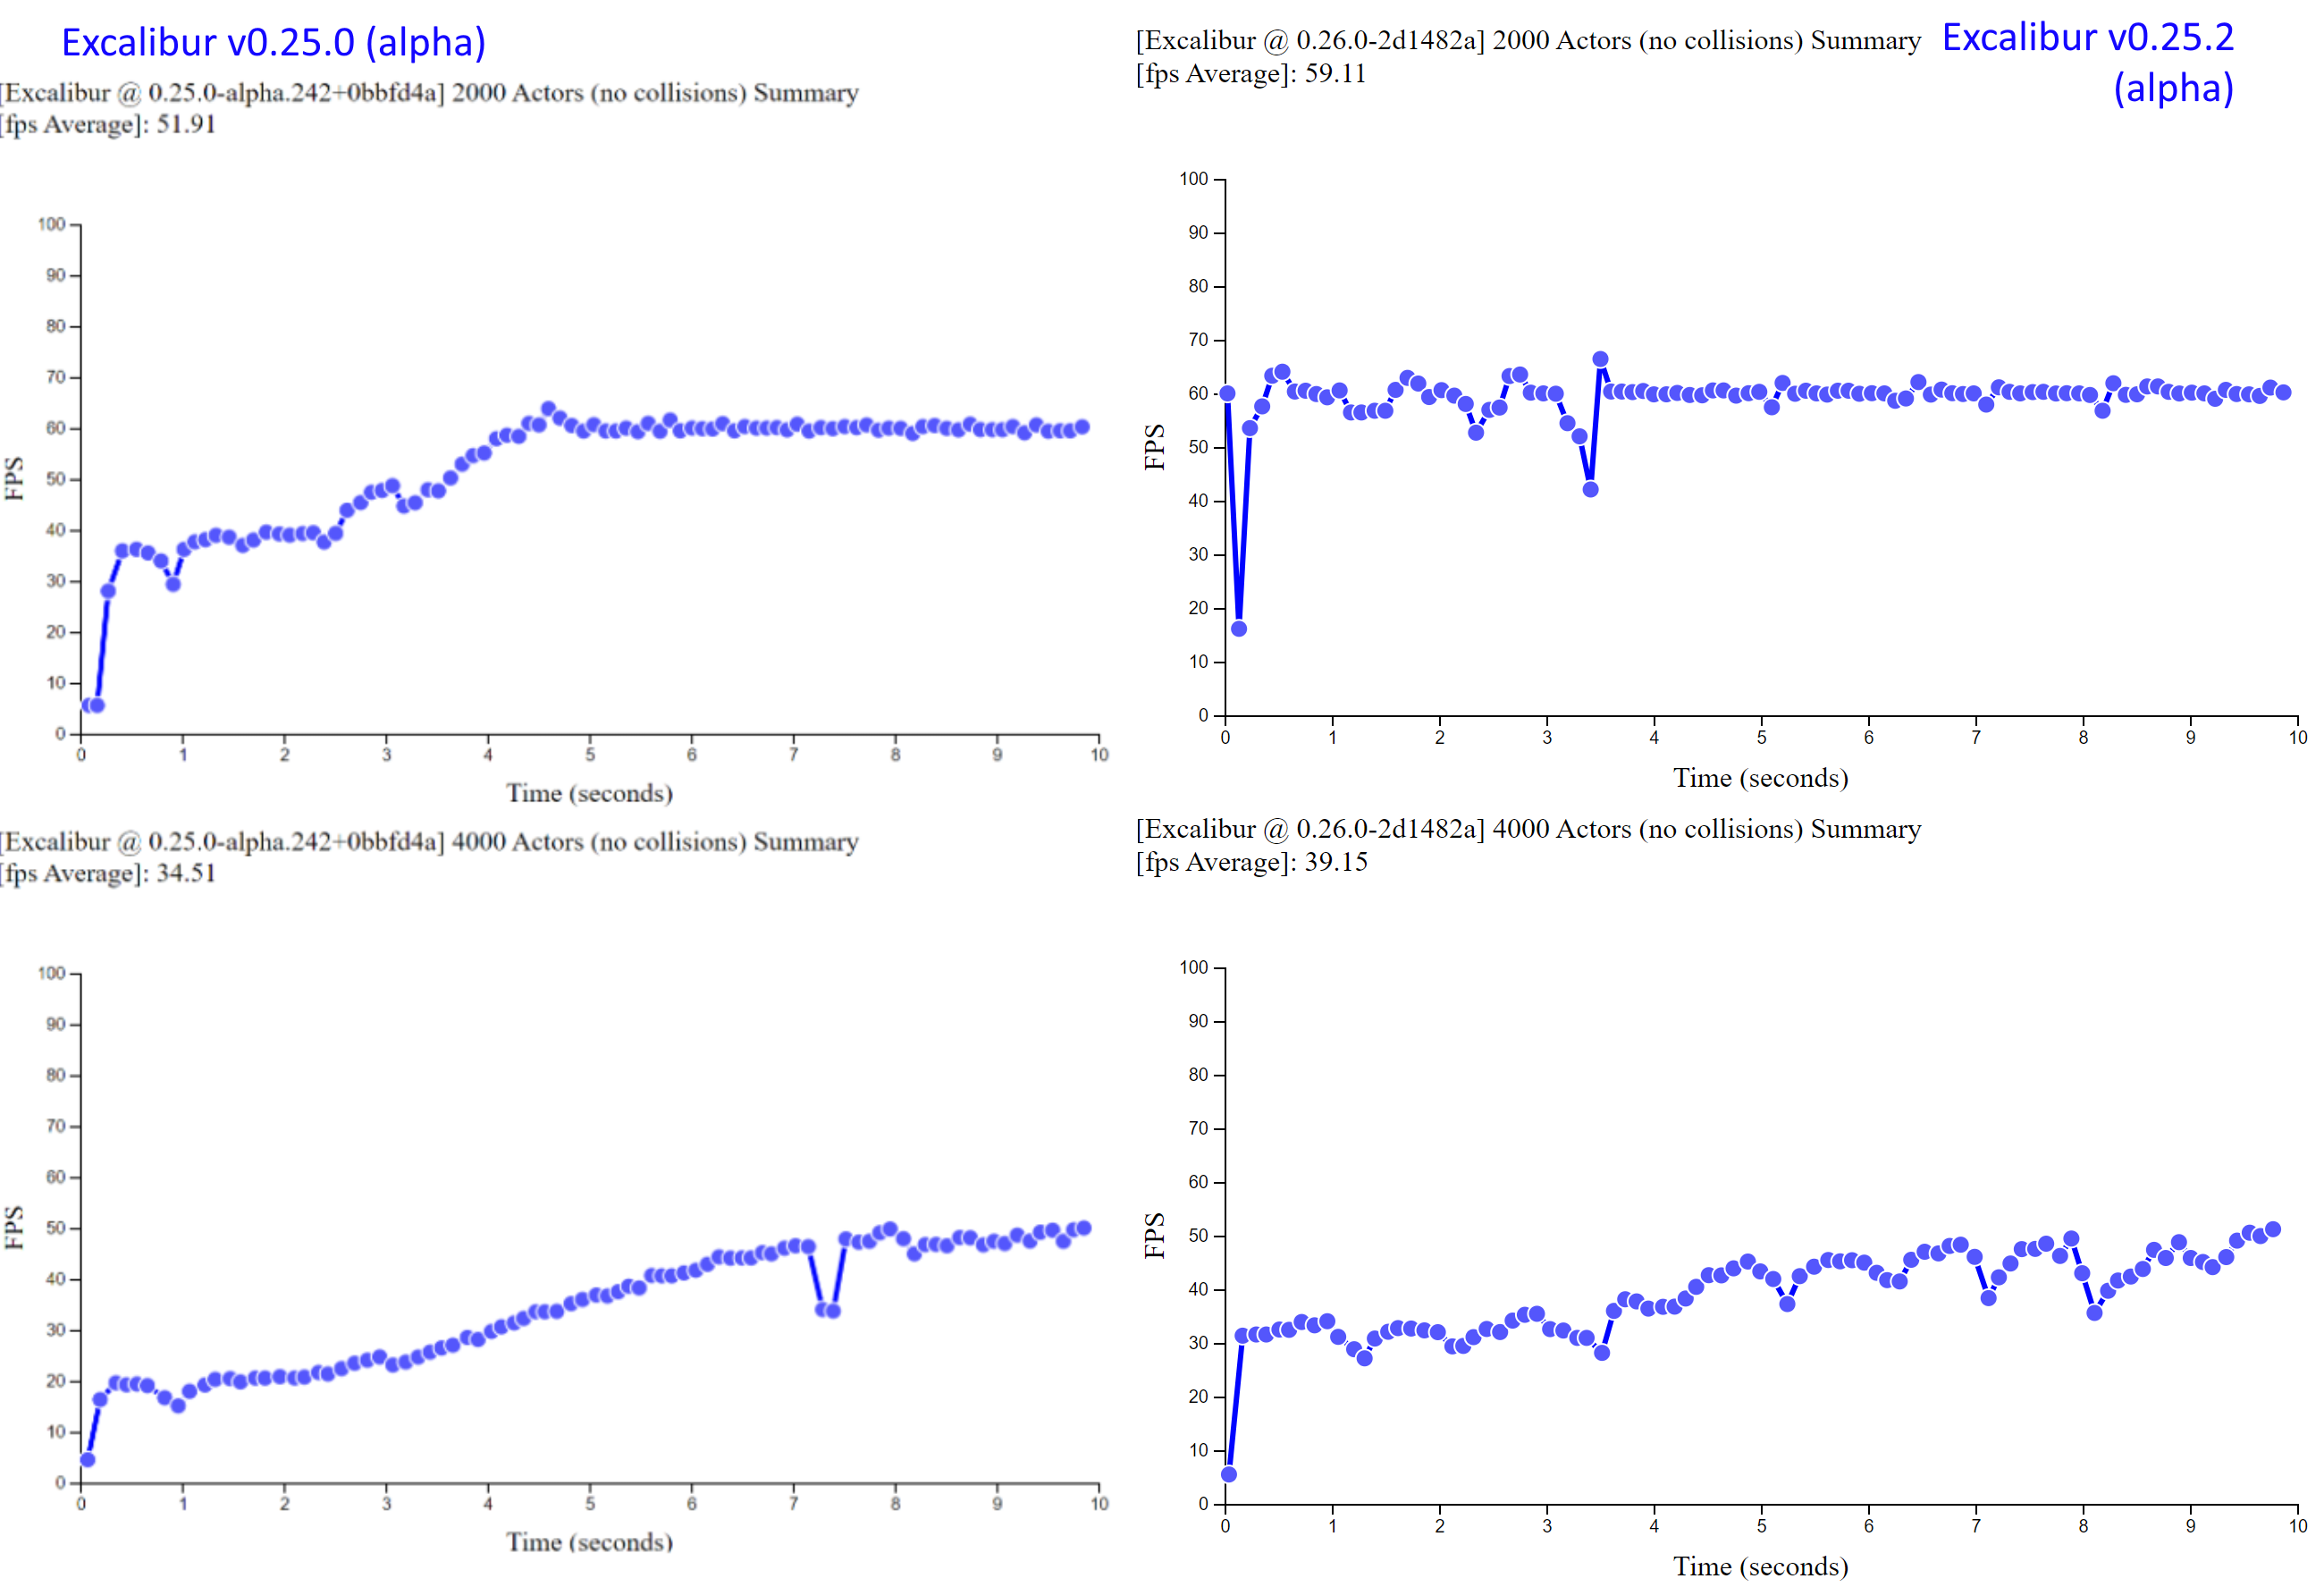 Excalibur v0.25.0 vs v0.25.2 benchmarks showing that v0.25.2 has much more consistent average FPS